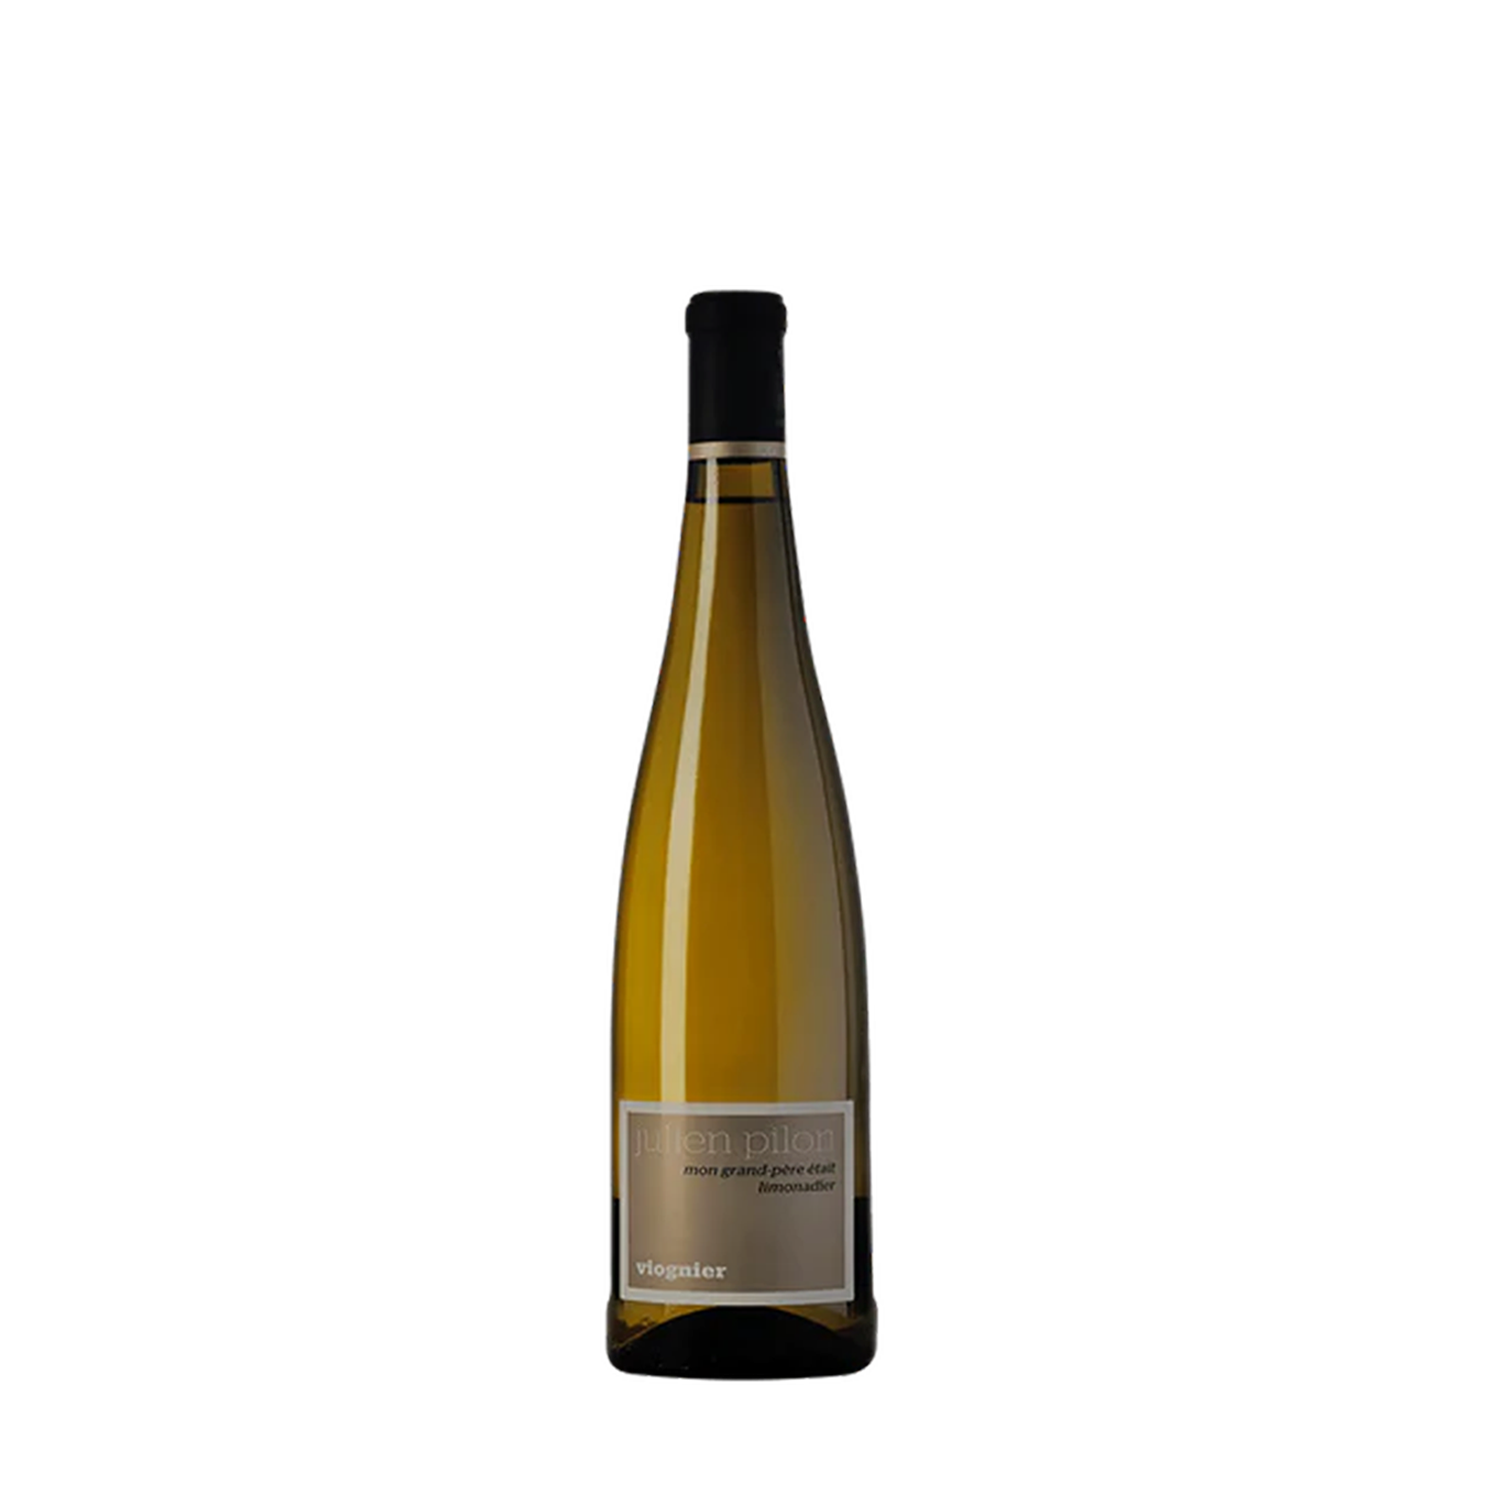 Vin de France Viognier Mon Grand Pere Etait Limonadier Domaine Pilon 2020